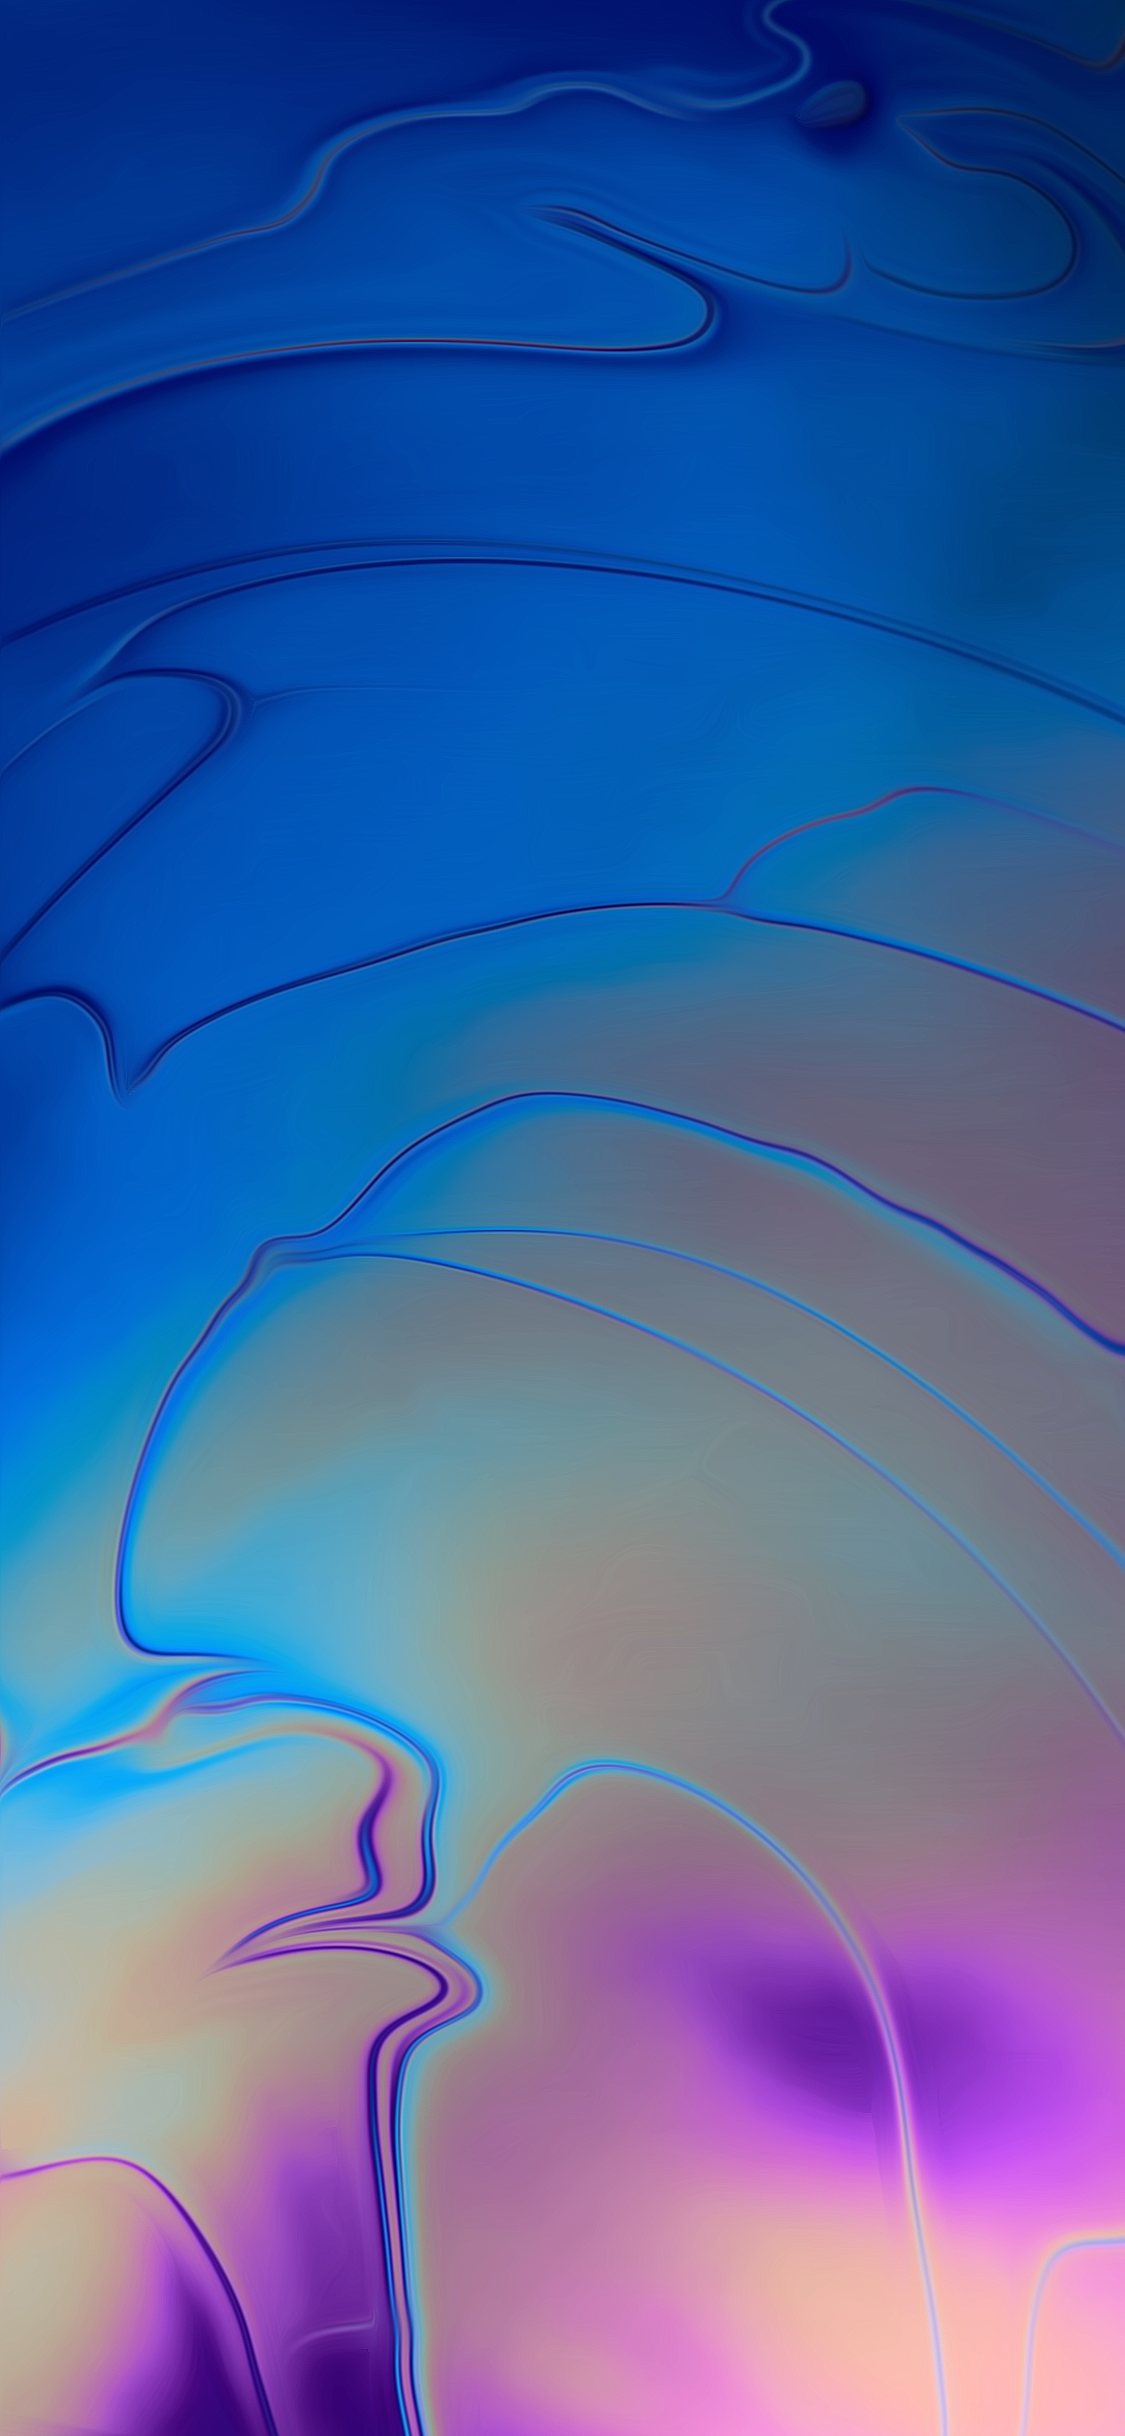 nouveau fond d'écran macbook,bleu,l'eau,violet,bleu électrique,ciel